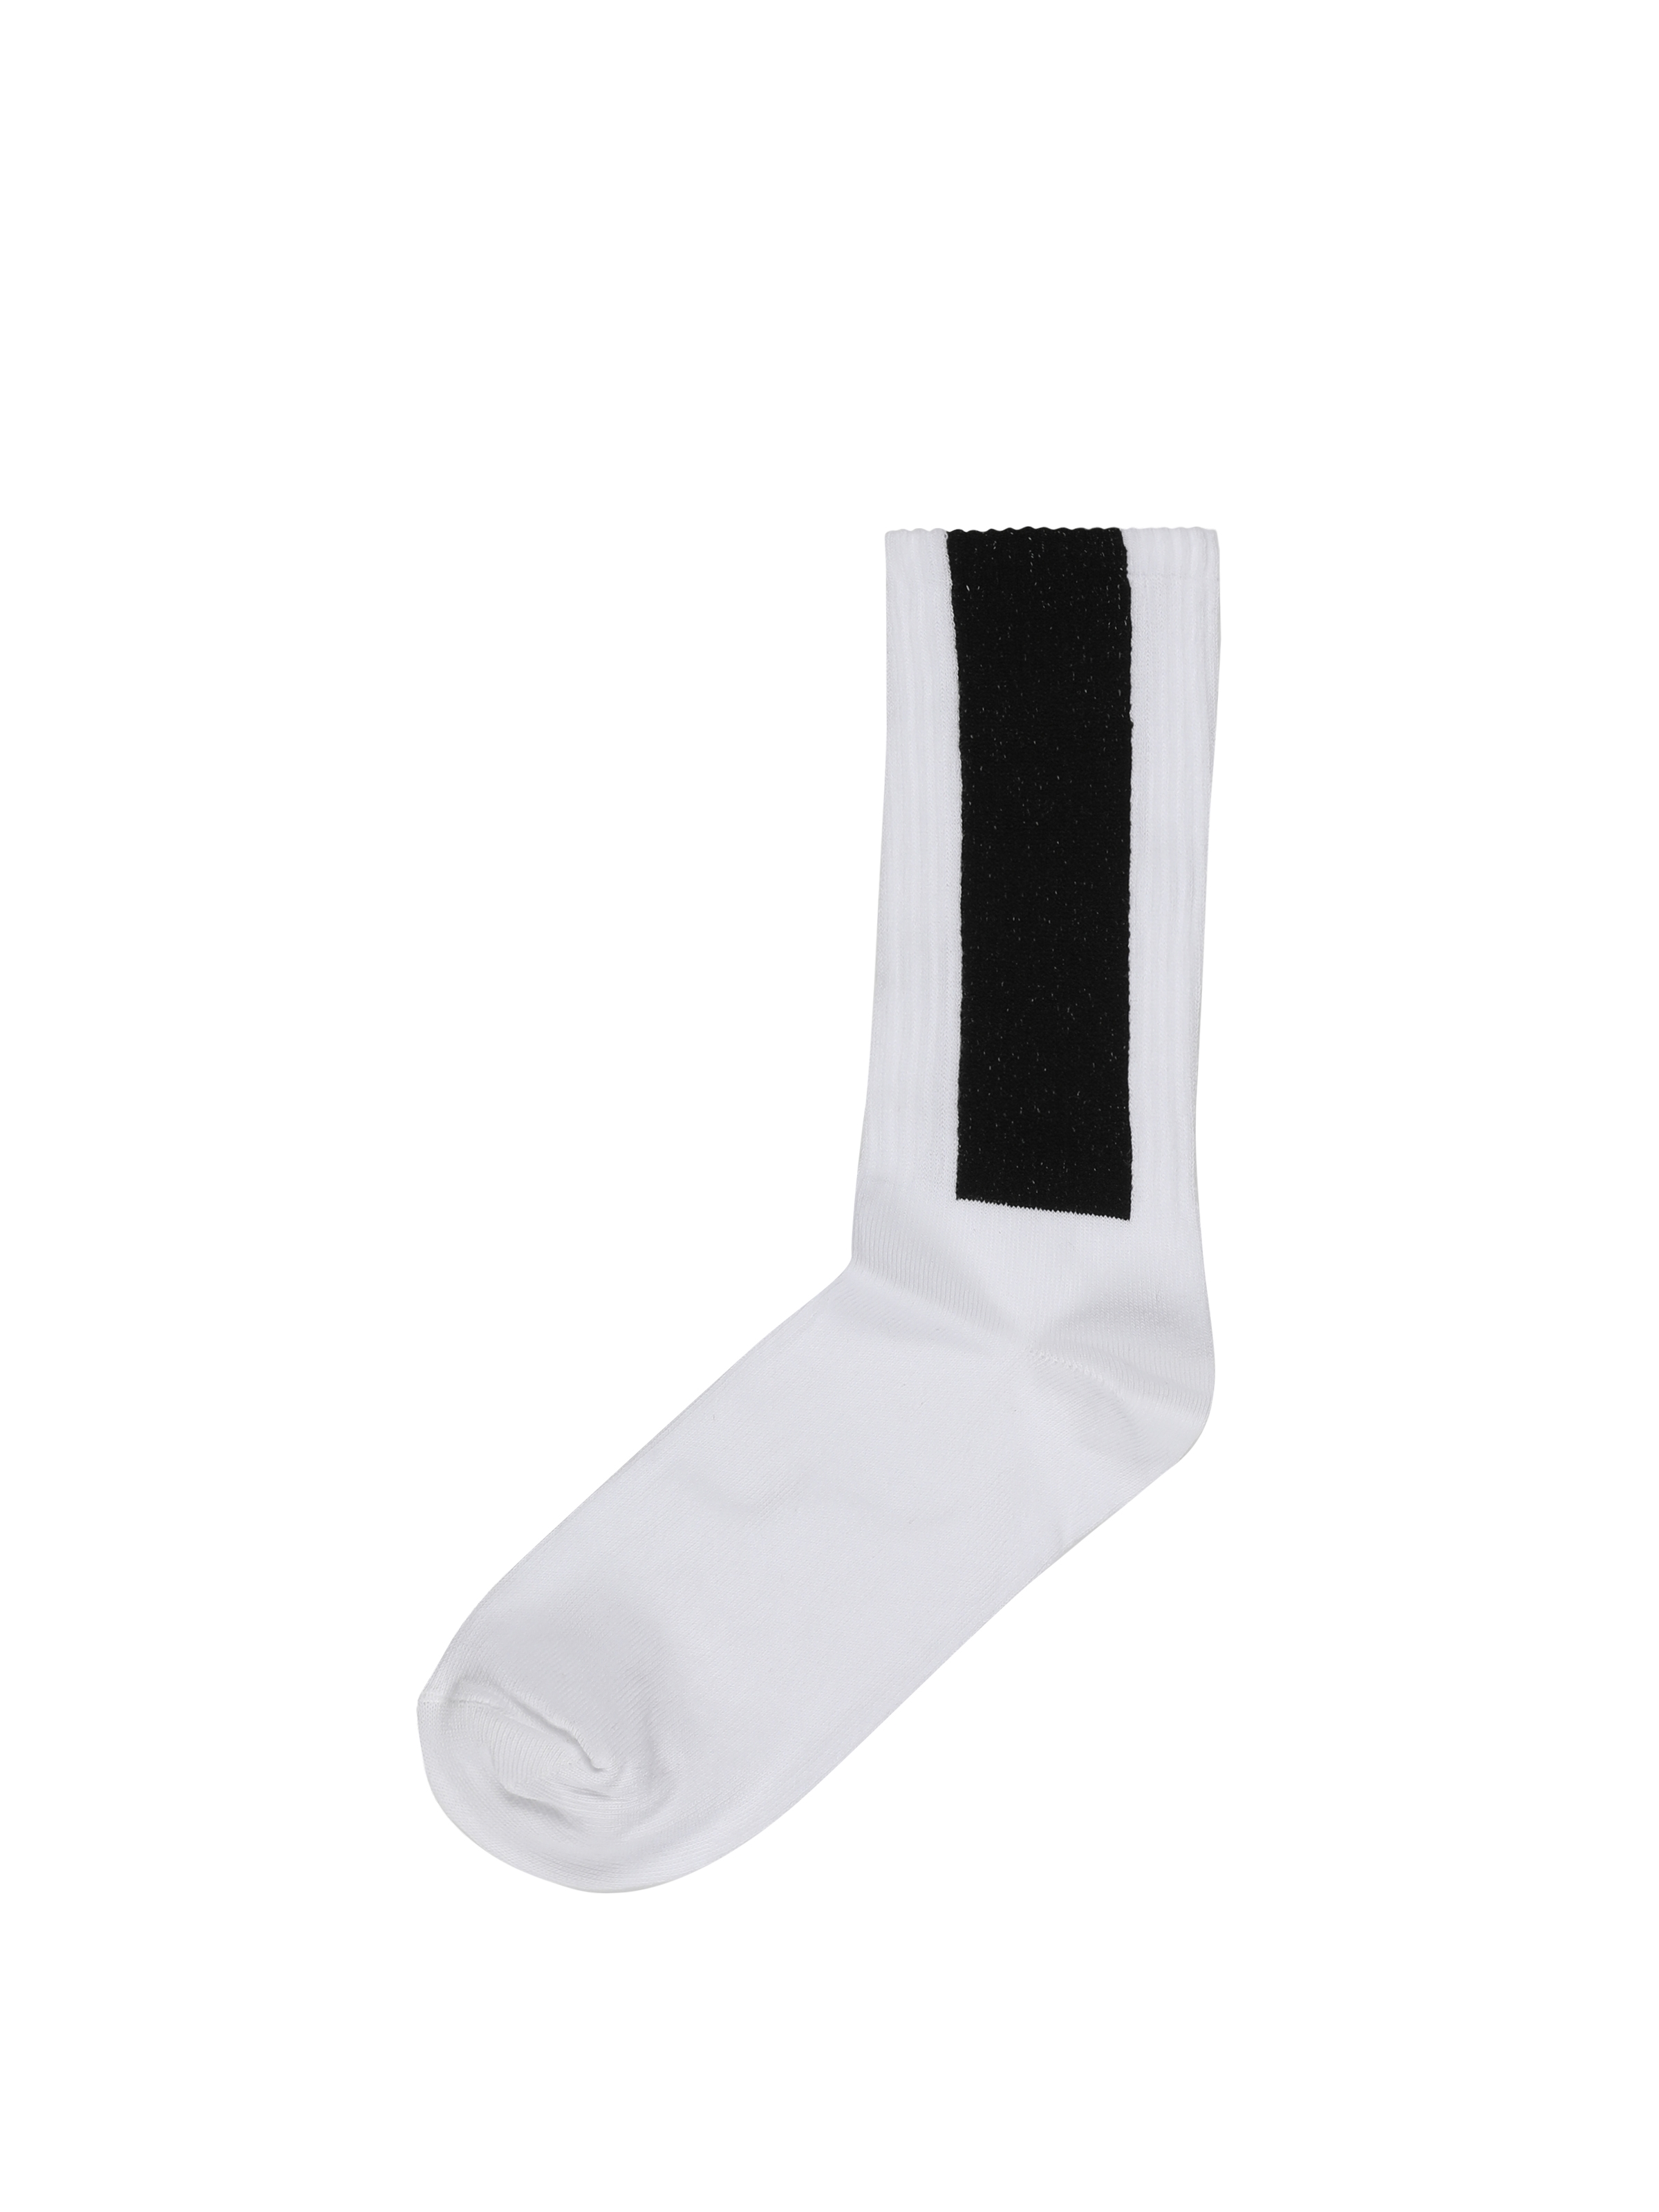 Baskılı Beyaz Erkek Çorap Cl1062123